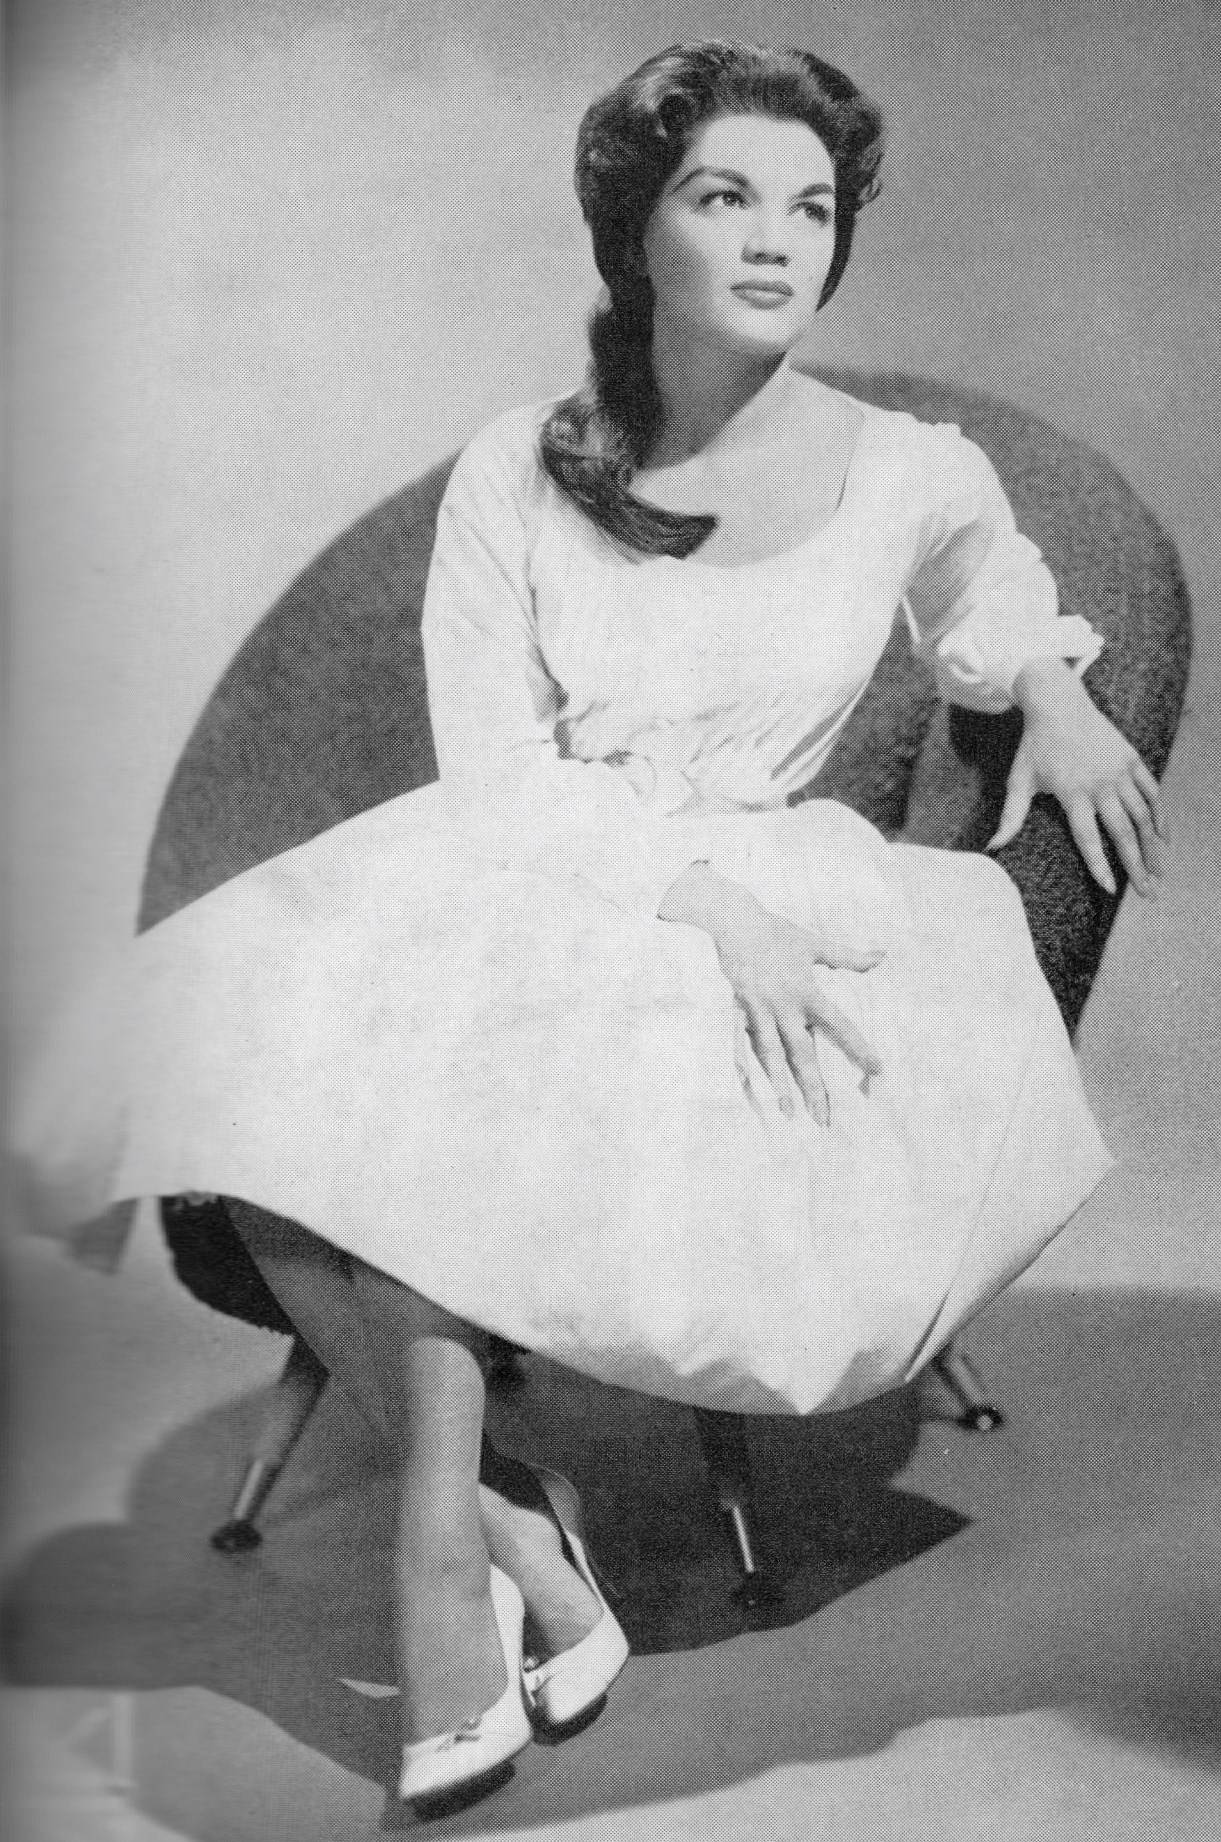 Ungeamerikanska Sångerskan Och Skådespelerskan Connie Francis. Wallpaper